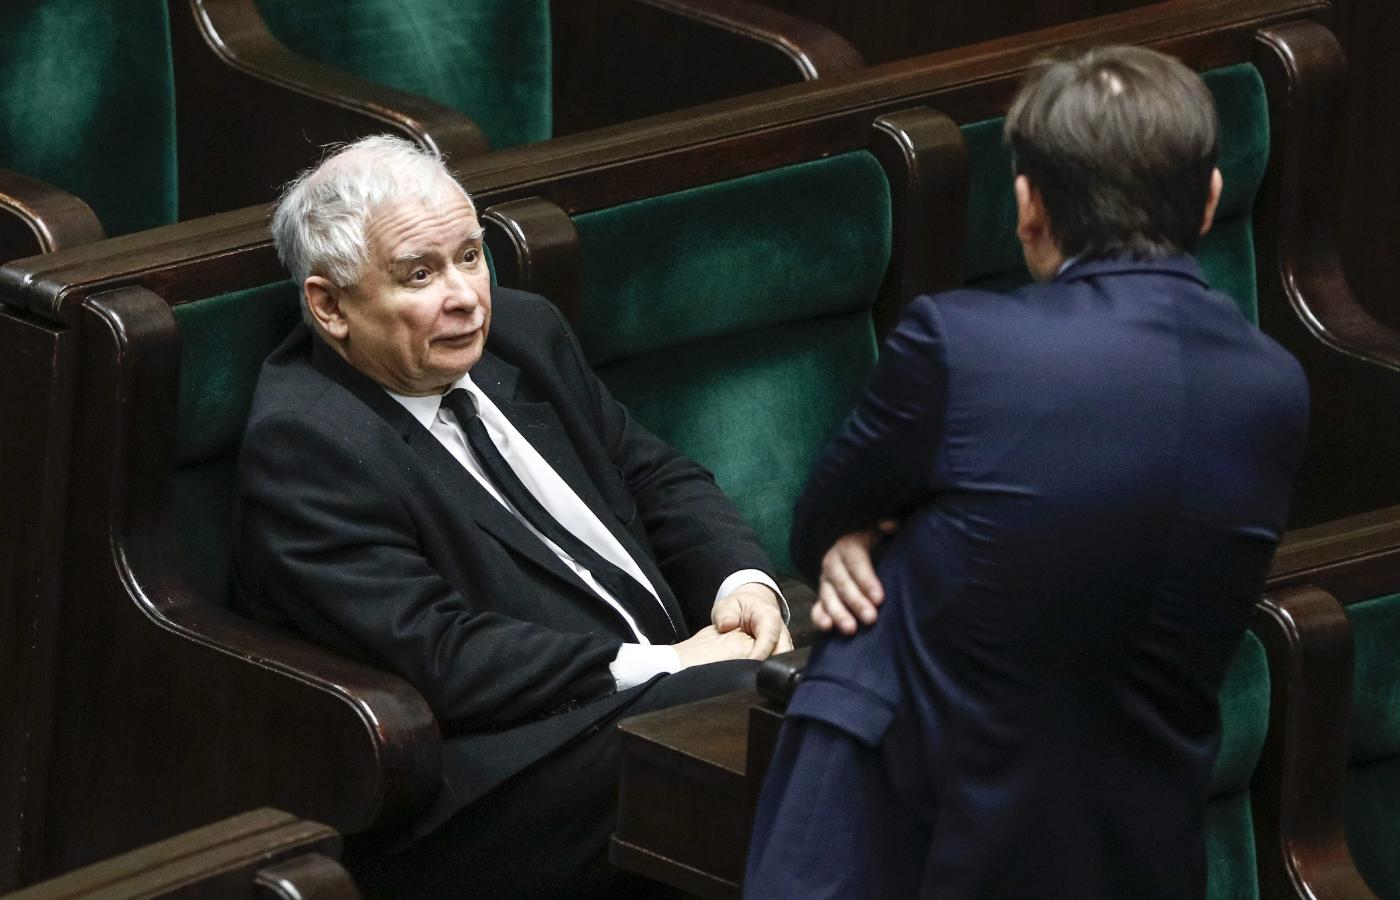 Sprzeciw Ziobry, Kaczyński musiał odczytać jako akt nielojalności i jawnego szantażu ze strony mikropartnera i zapowiedź kolejnych wymuszeń.